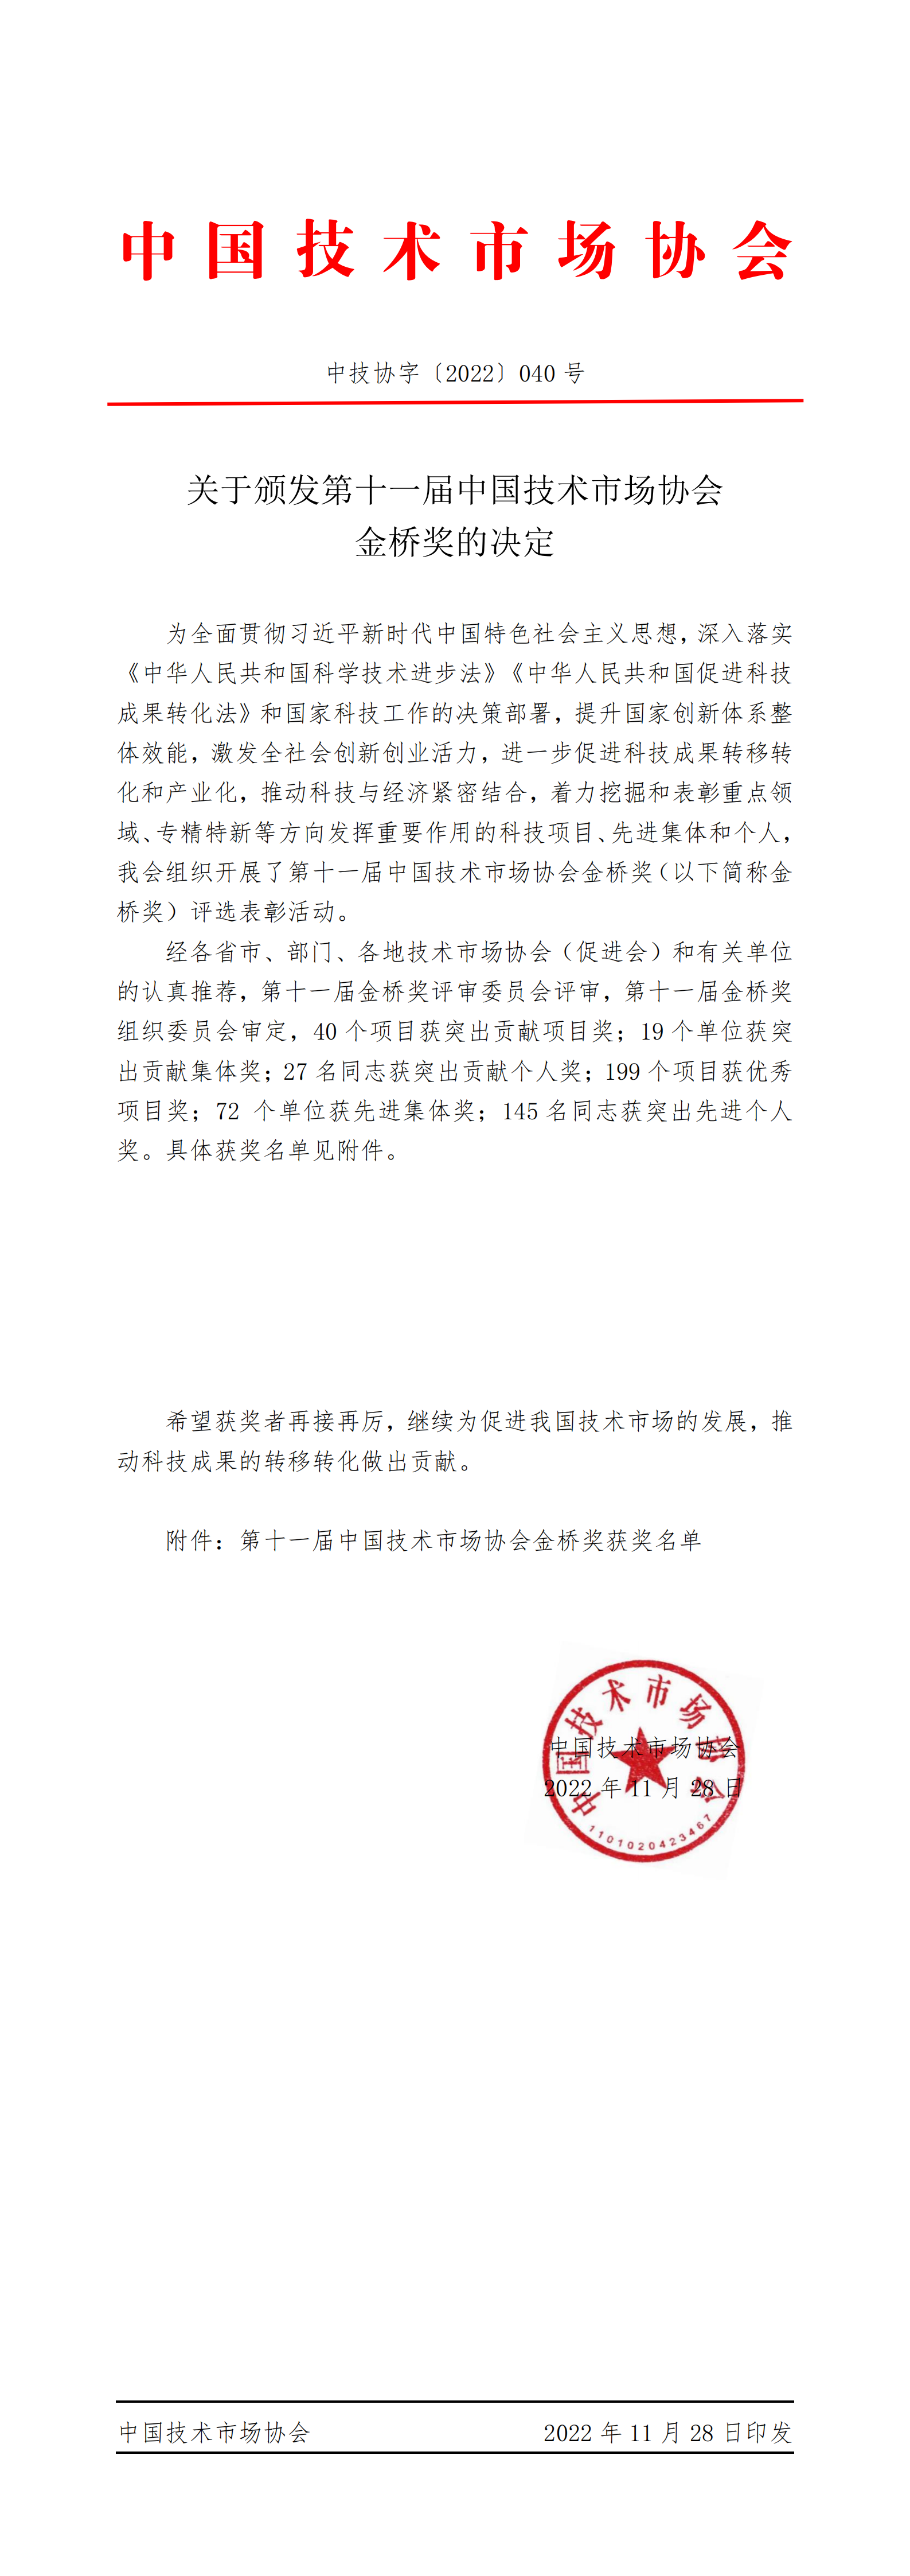 2022040关于颁发第十一届中国技术市场协会金桥奖的决定_00.png